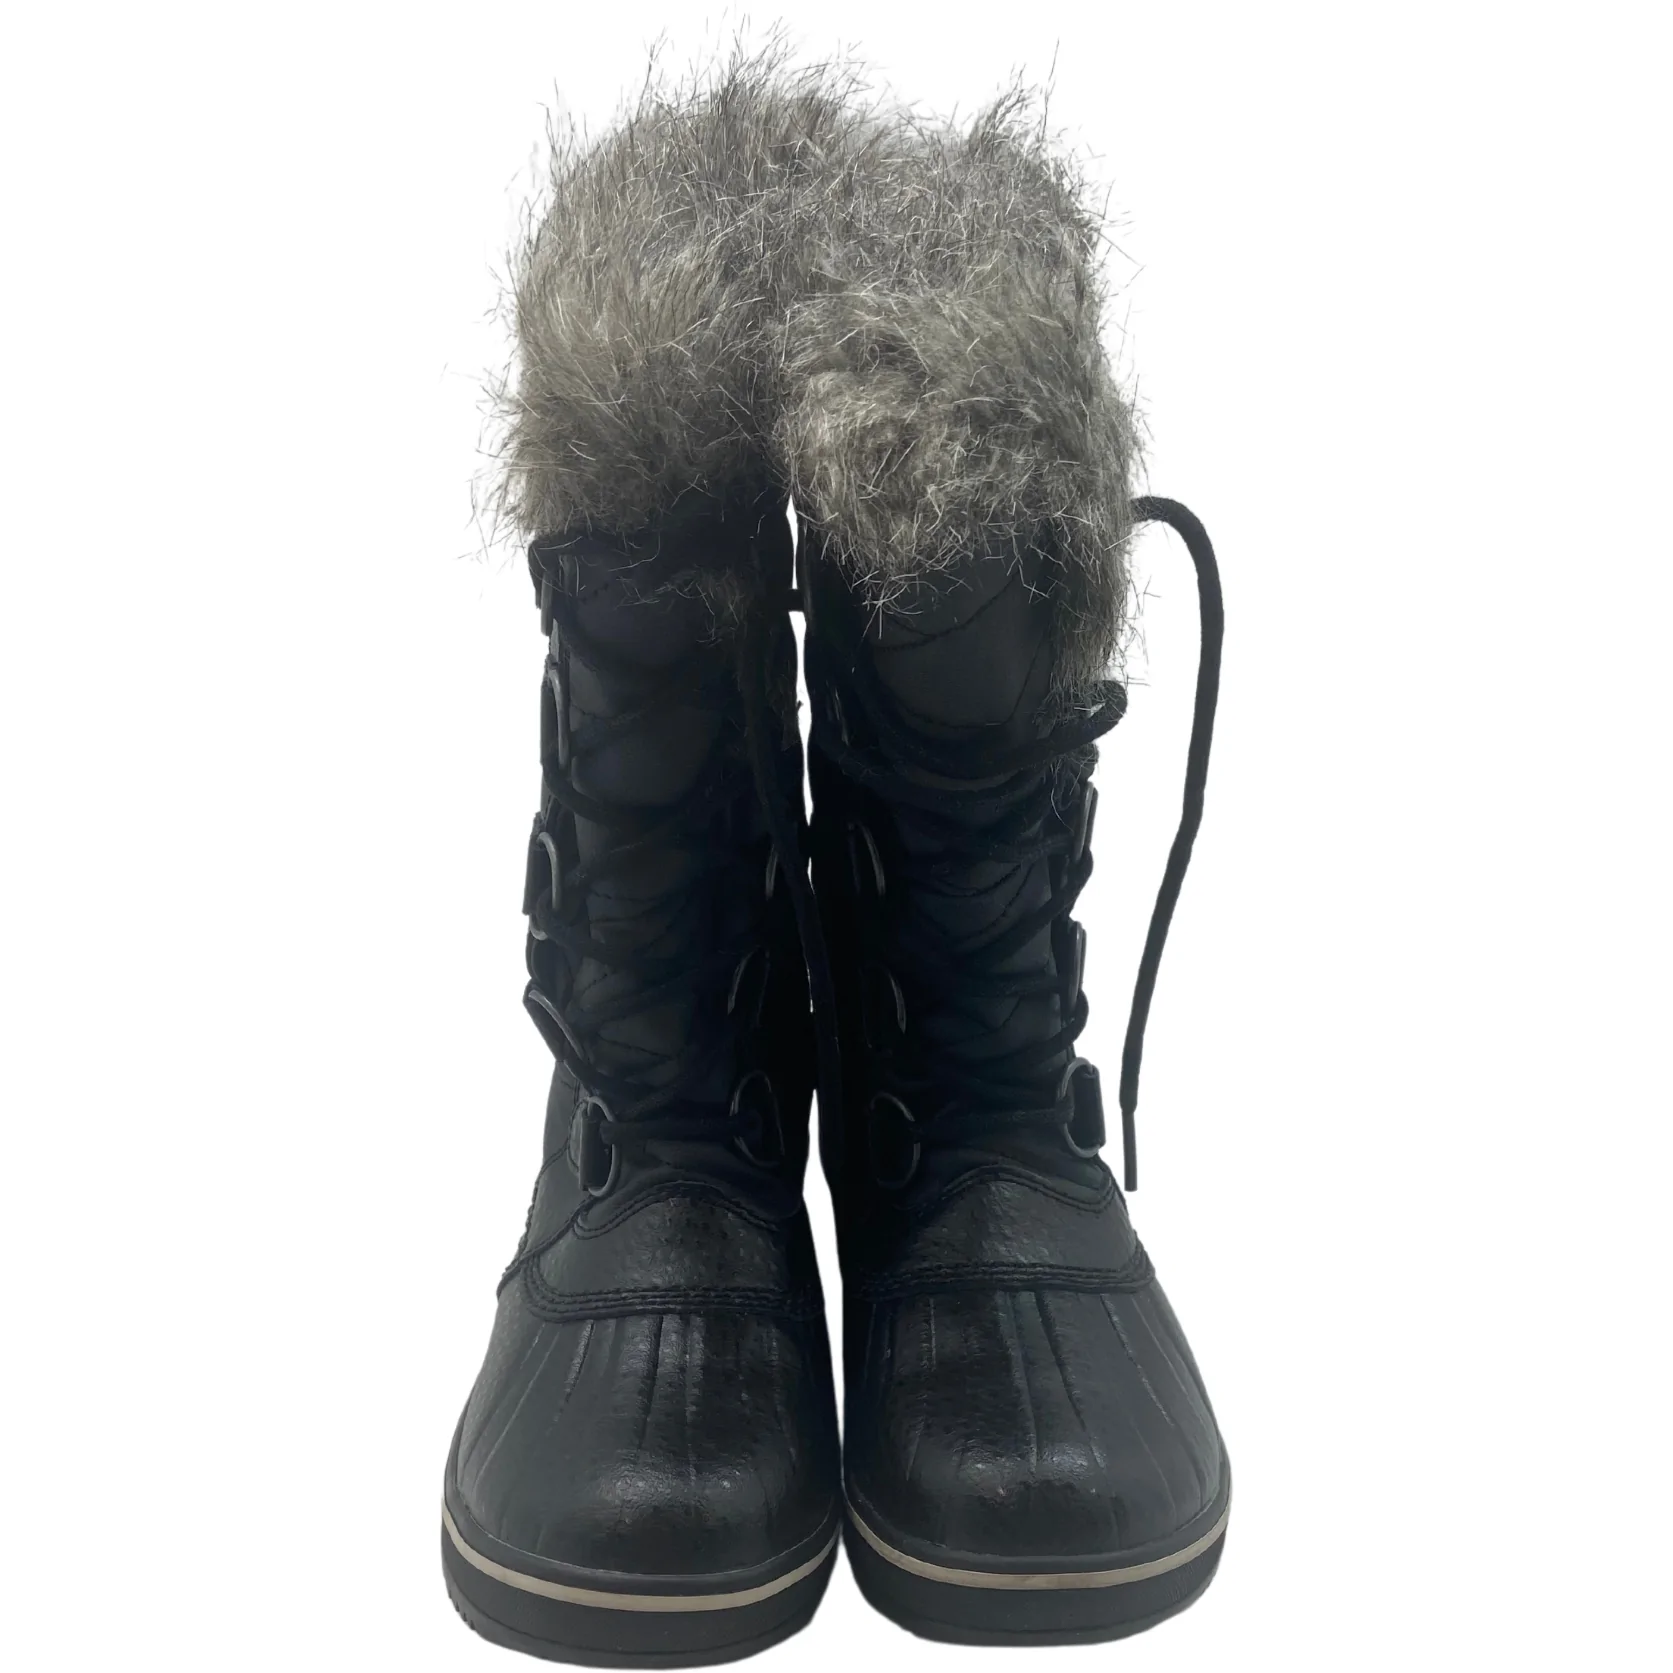 Sorel: Women's Boots / Winter Boots / Tofino  II / Waterproof / Faux Fur / Black / Size 6